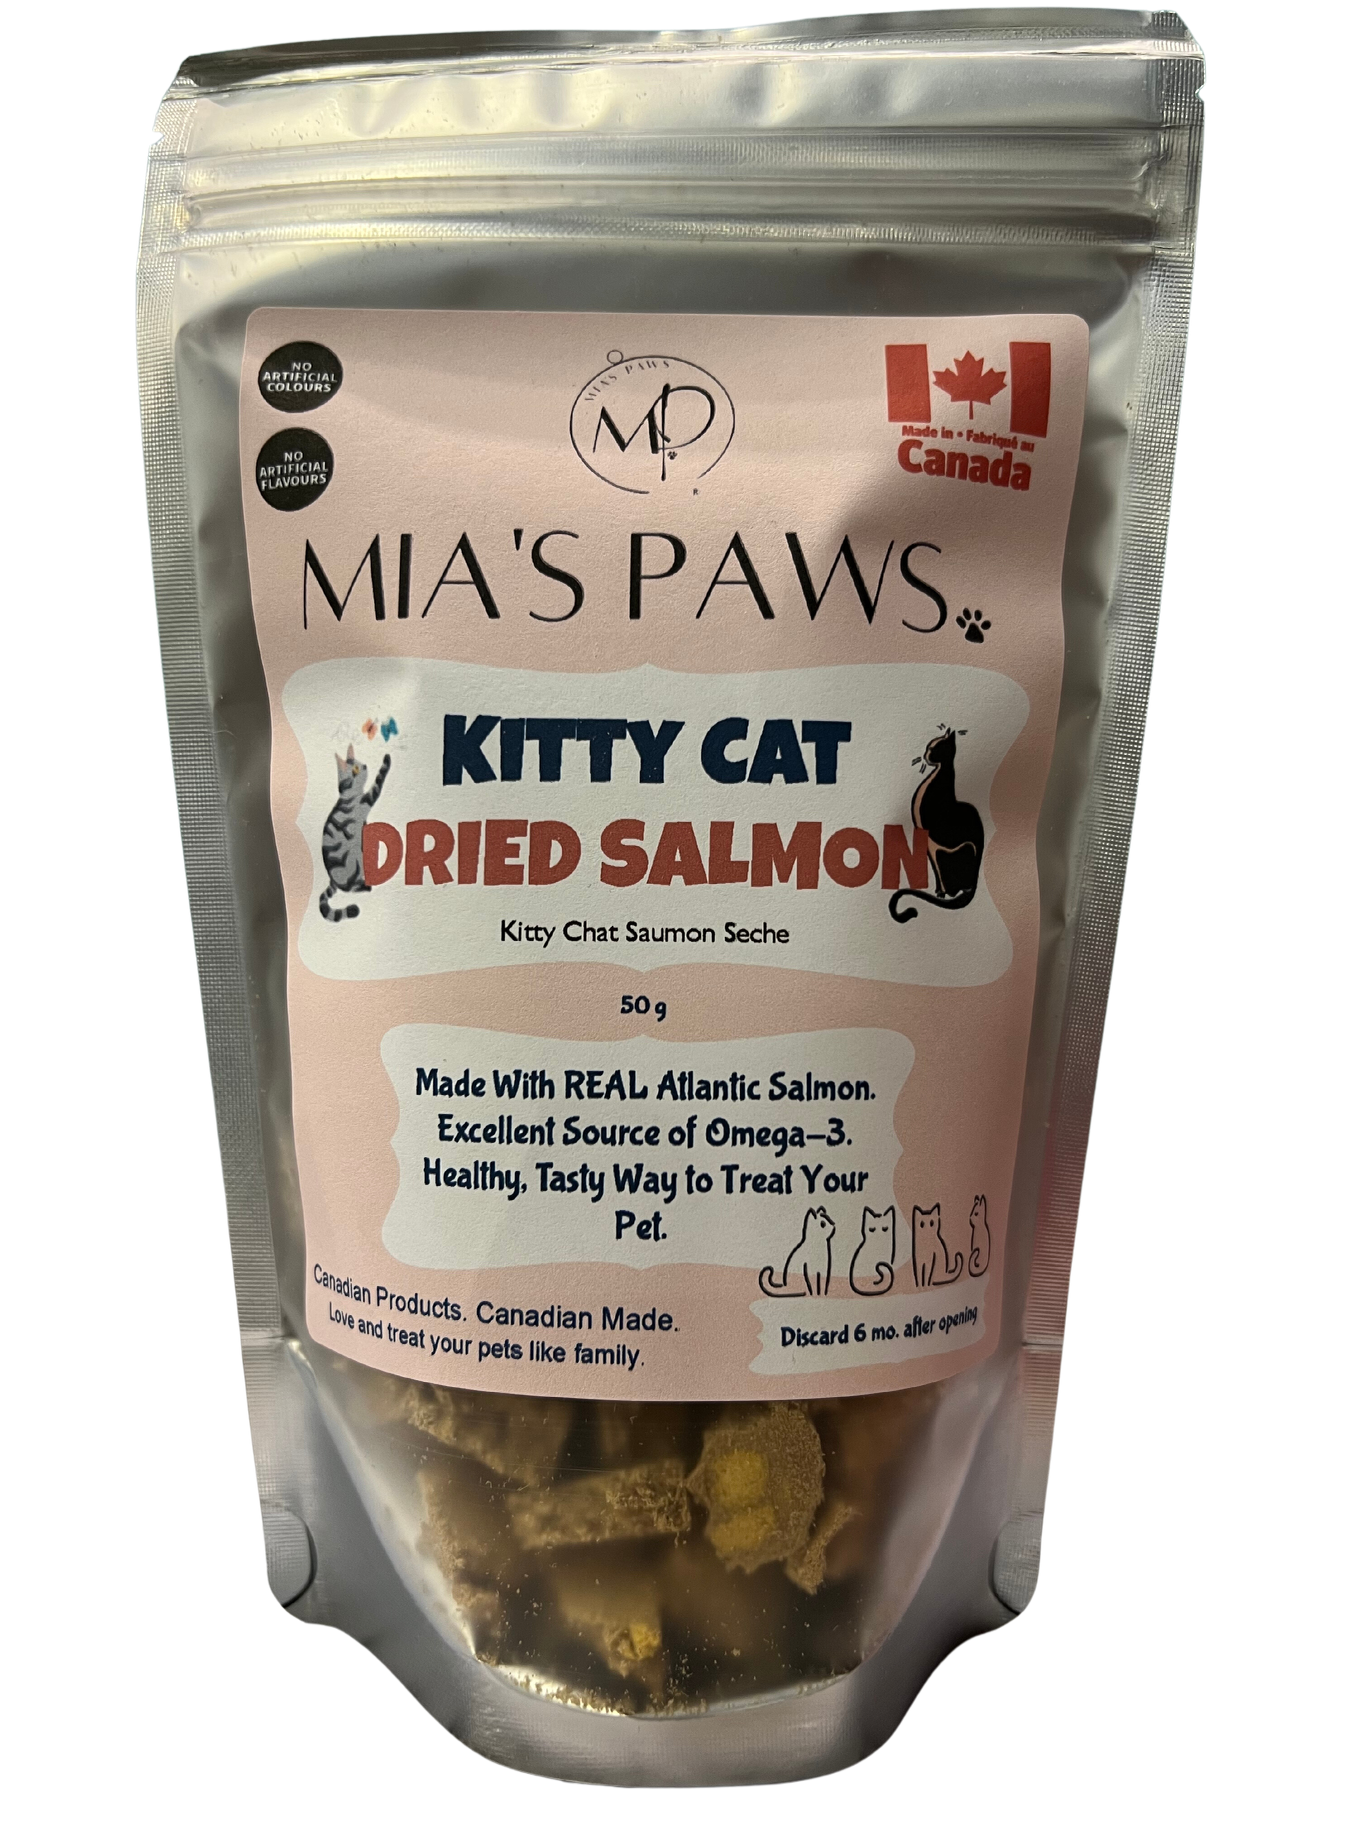 Kitty Cat Dried Salmon - Mia's Paws